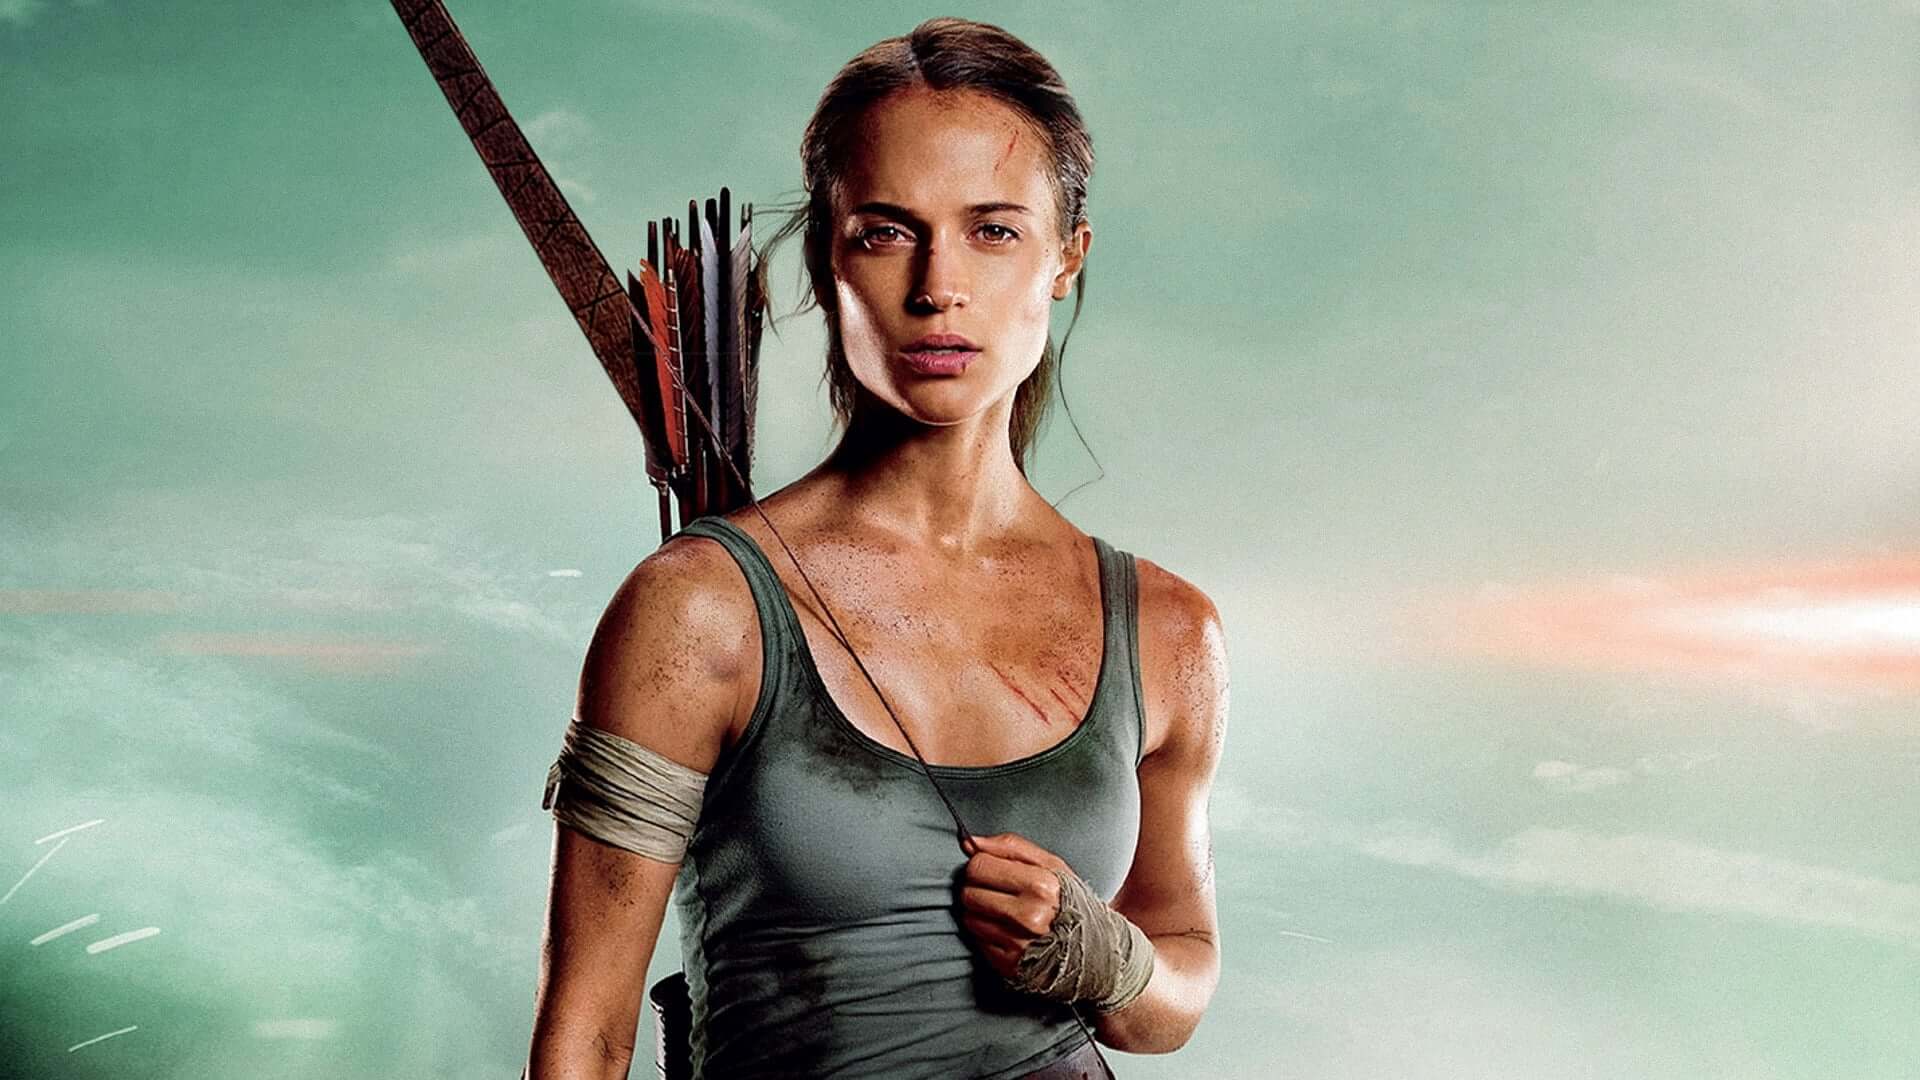 Foto do filme Lara Croft: Tomb Raider - A Origem da Vida - Foto 27 de 59 -  AdoroCinema